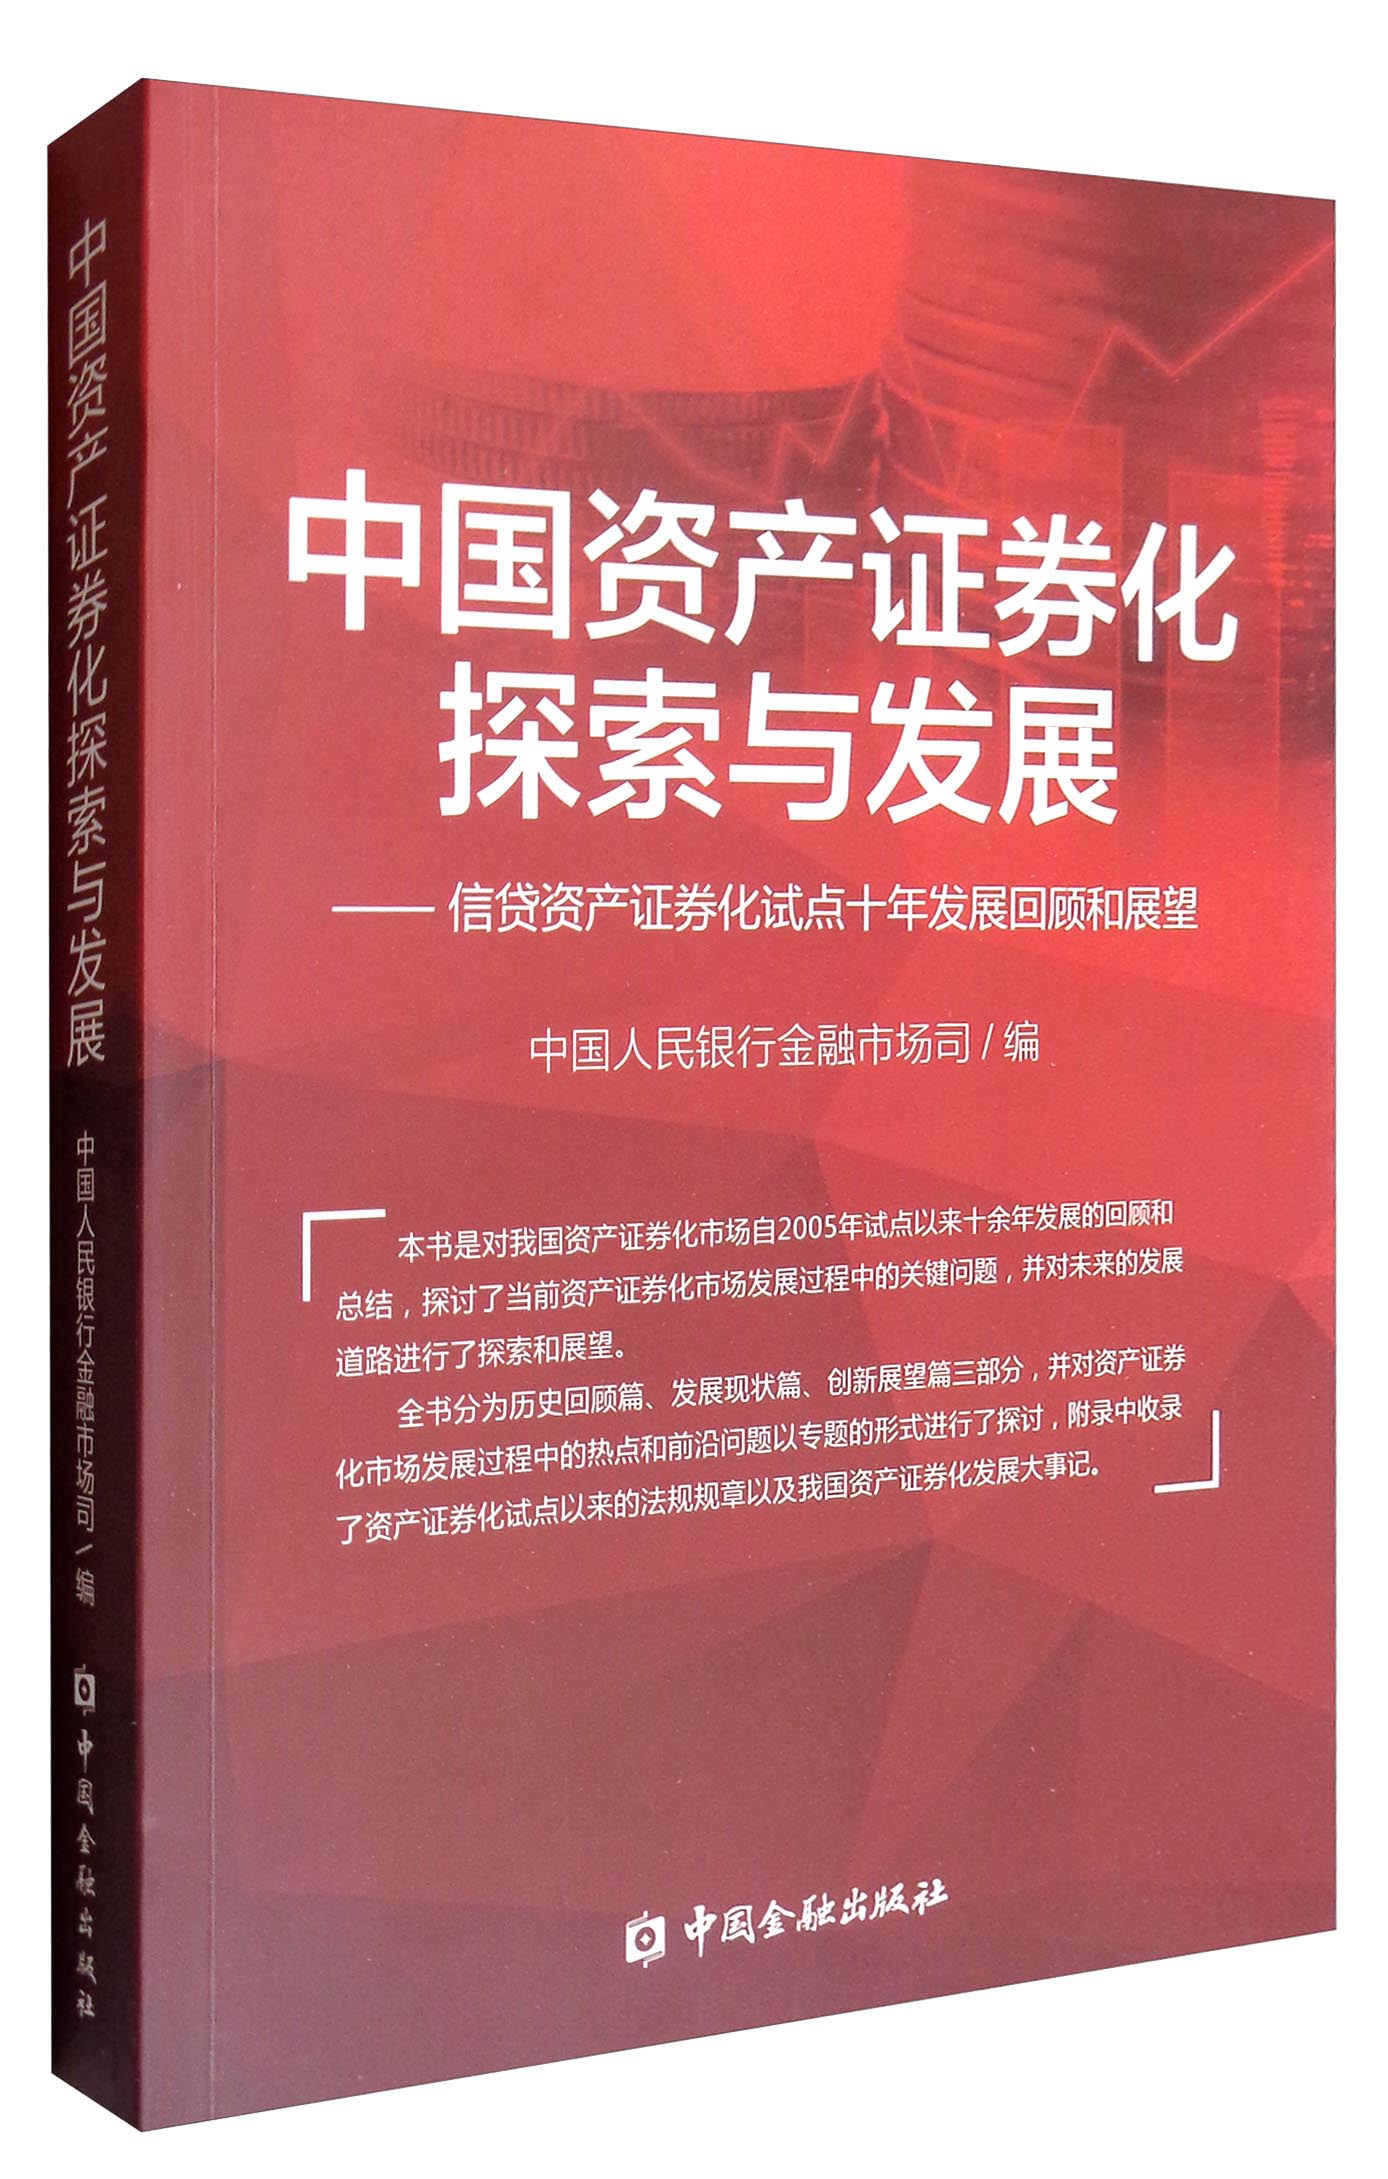 中国资产证券化探索与发展：信贷资产证券化试点十年发展回顾和展望 kindle格式下载